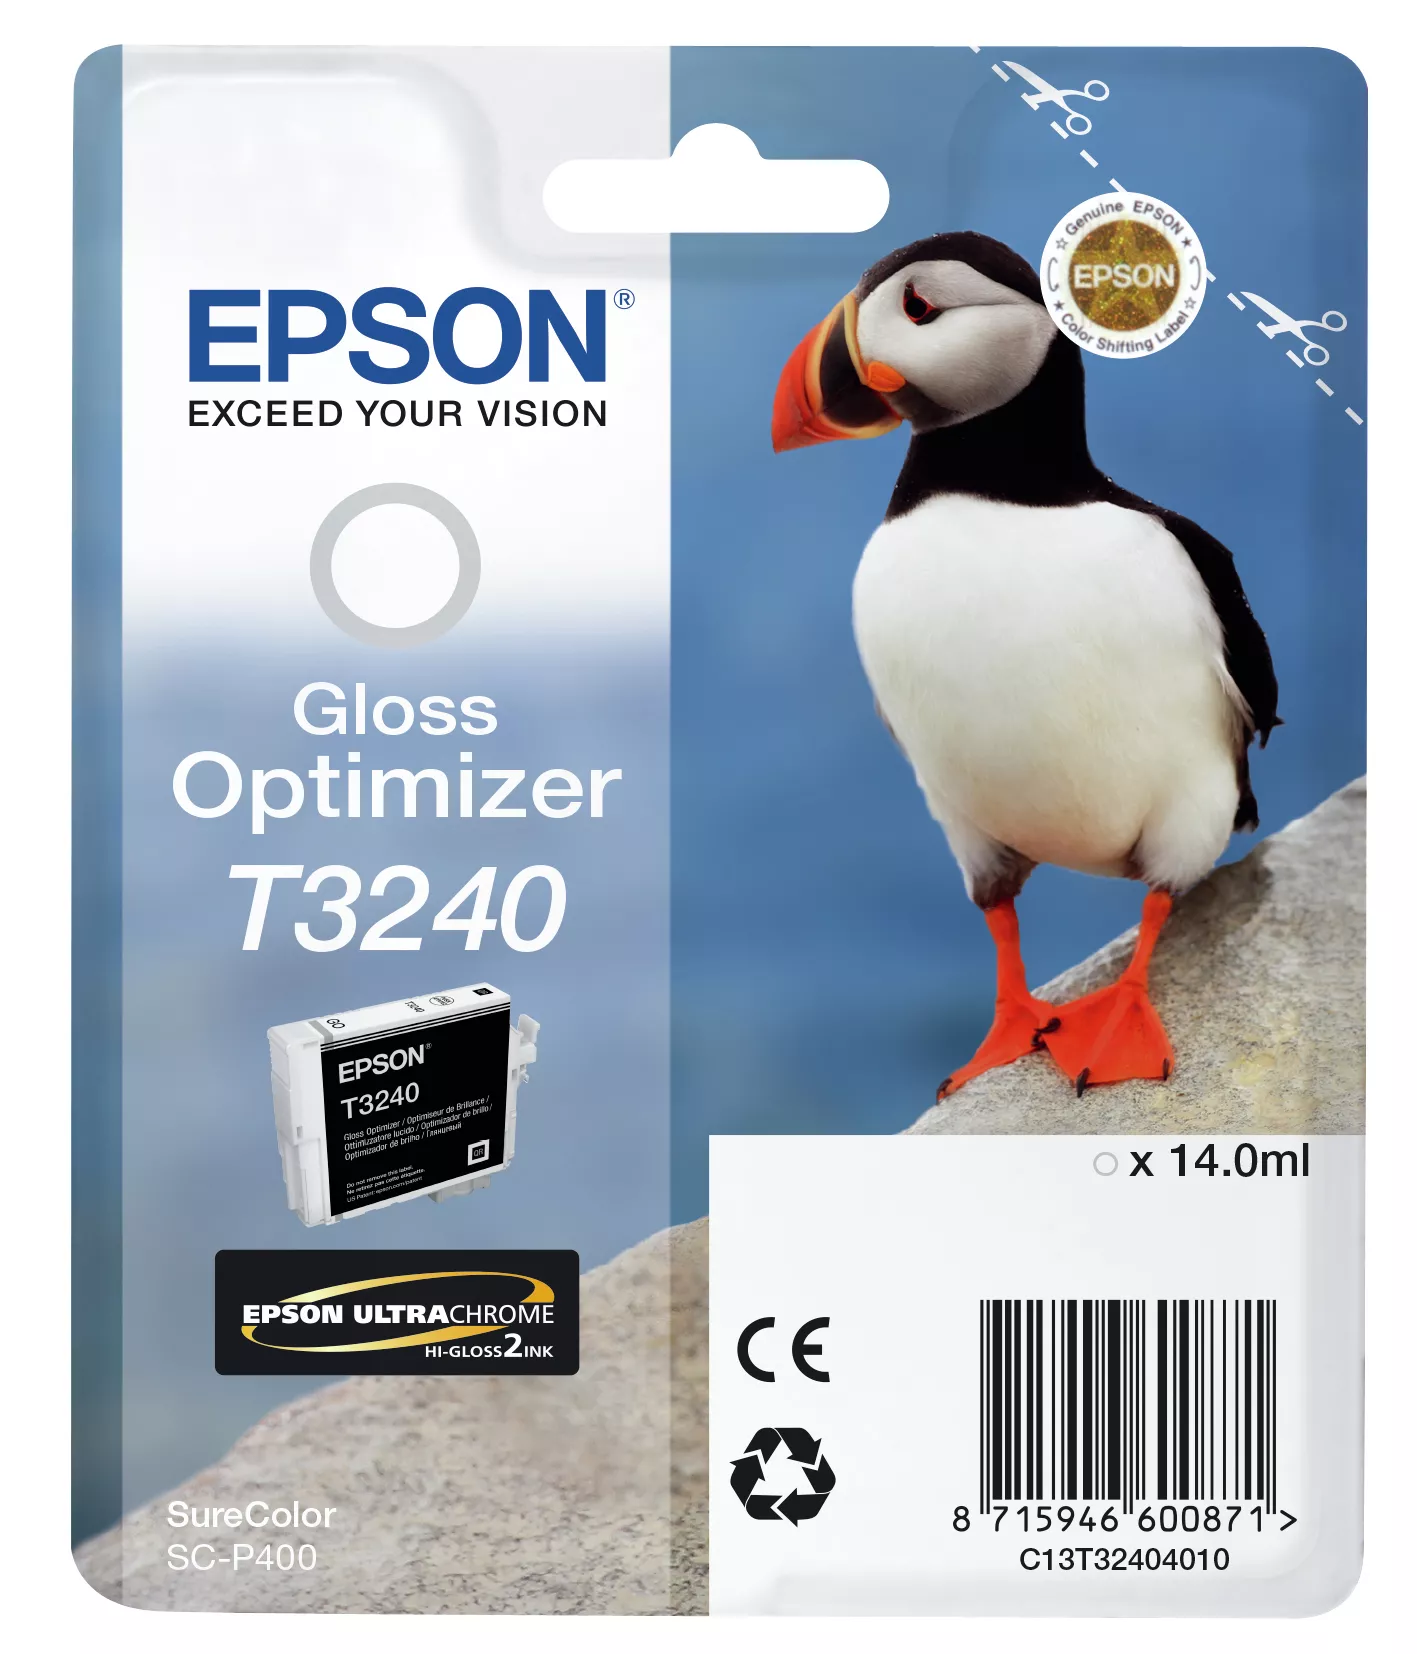 Achat EPSON Cartouche T3240 - optimisateur de brillance 3350 sur hello RSE